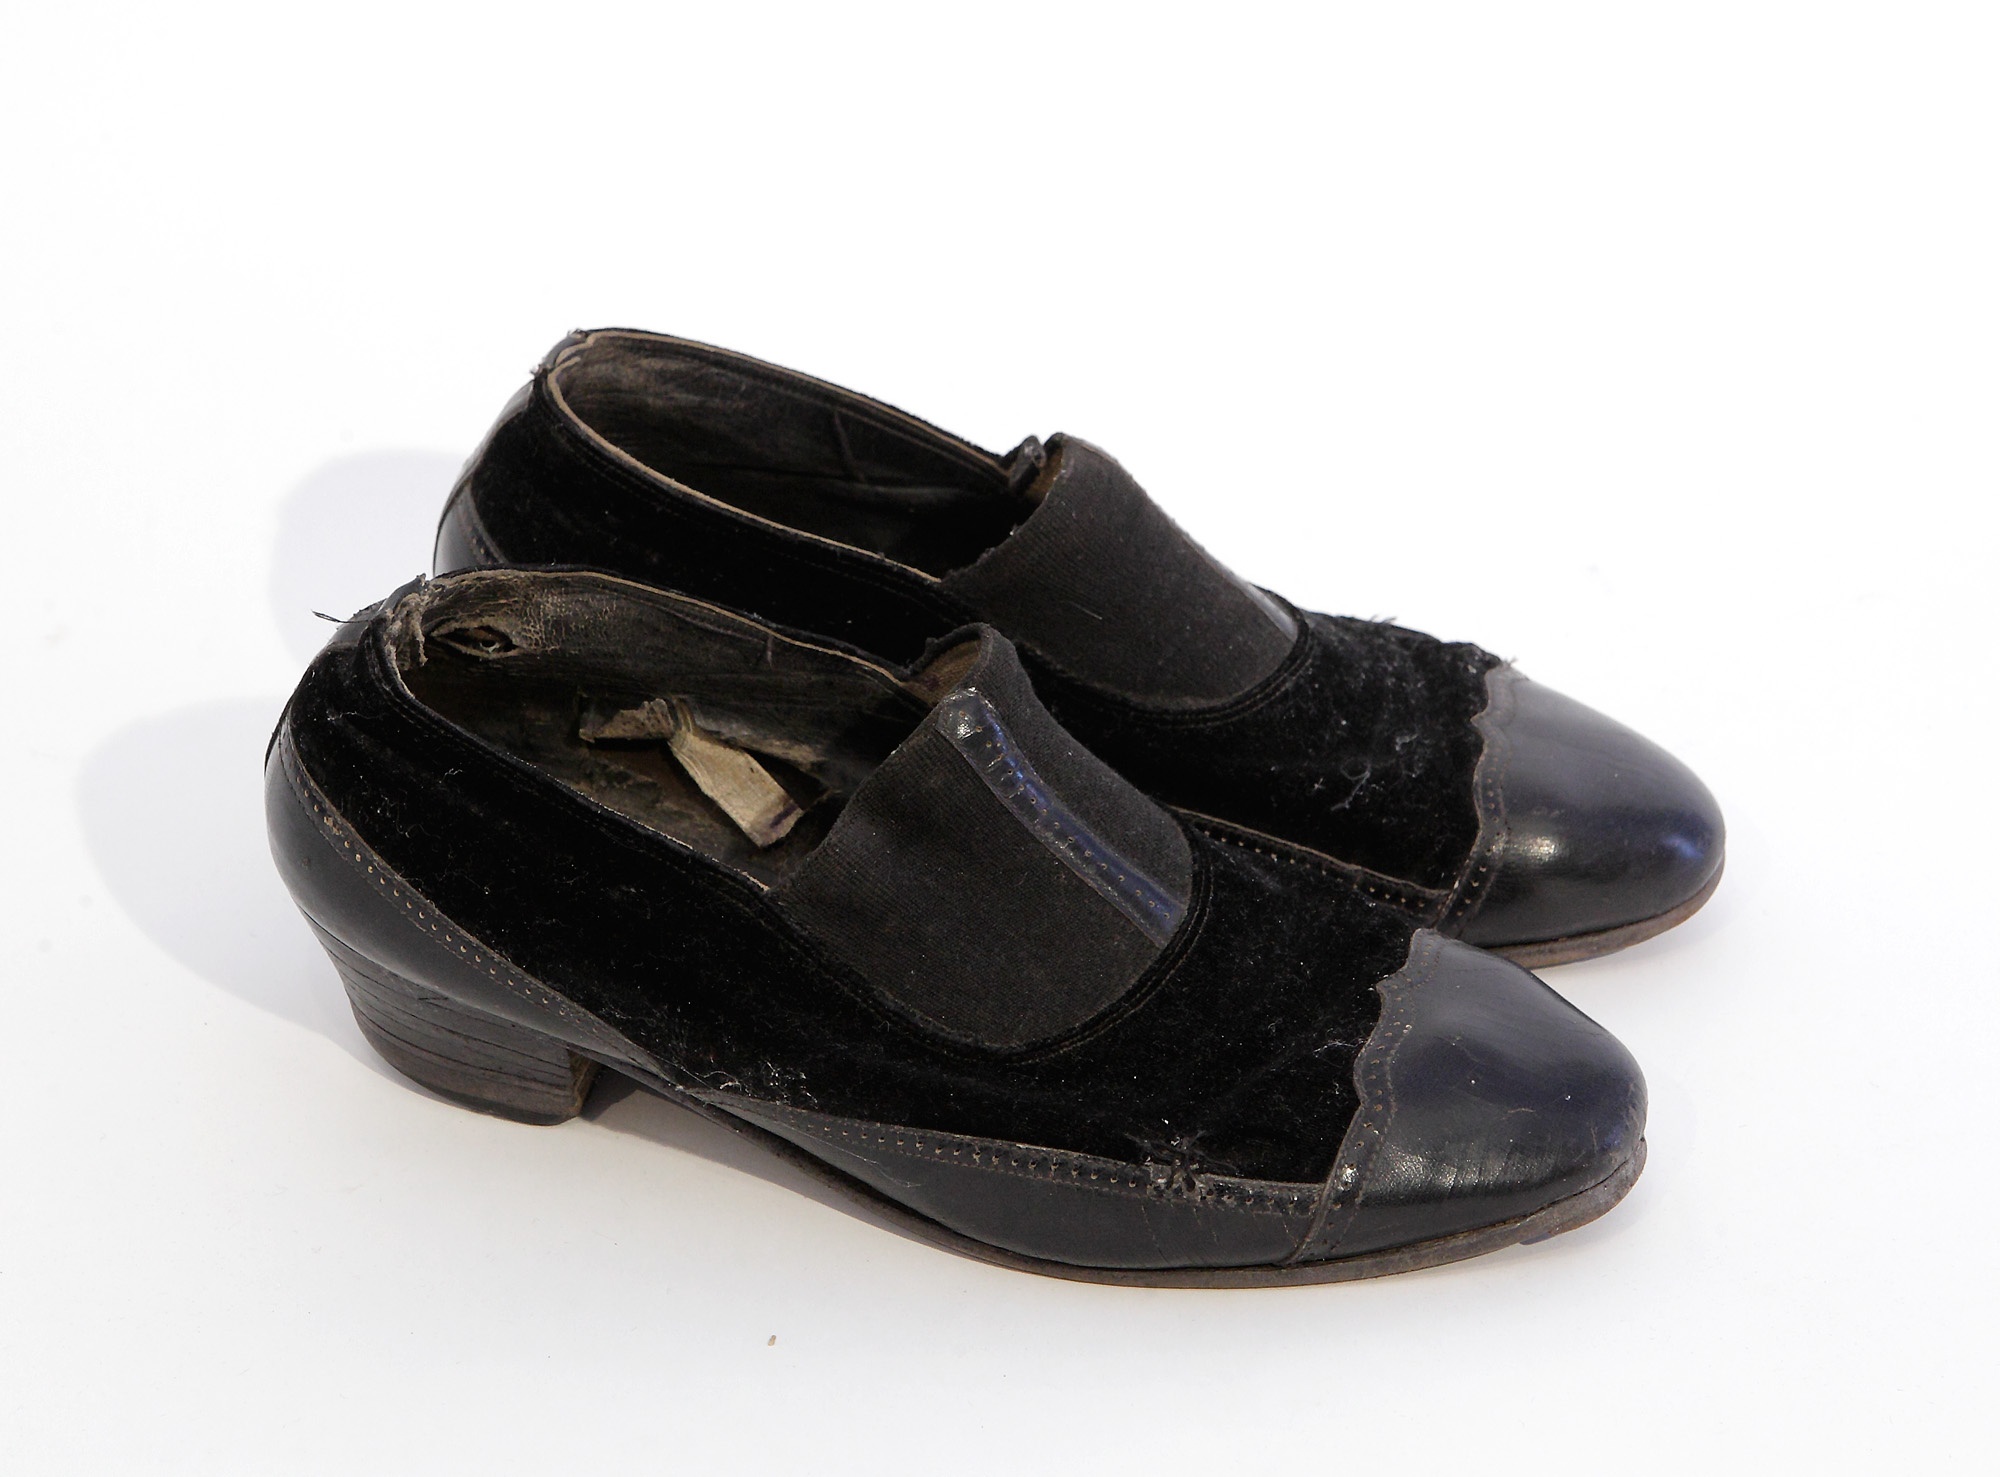 Jobblábas női cipő  /  Számád Kamad Sueh (Ceglédberceli Falumúzeum CC BY-NC-SA)